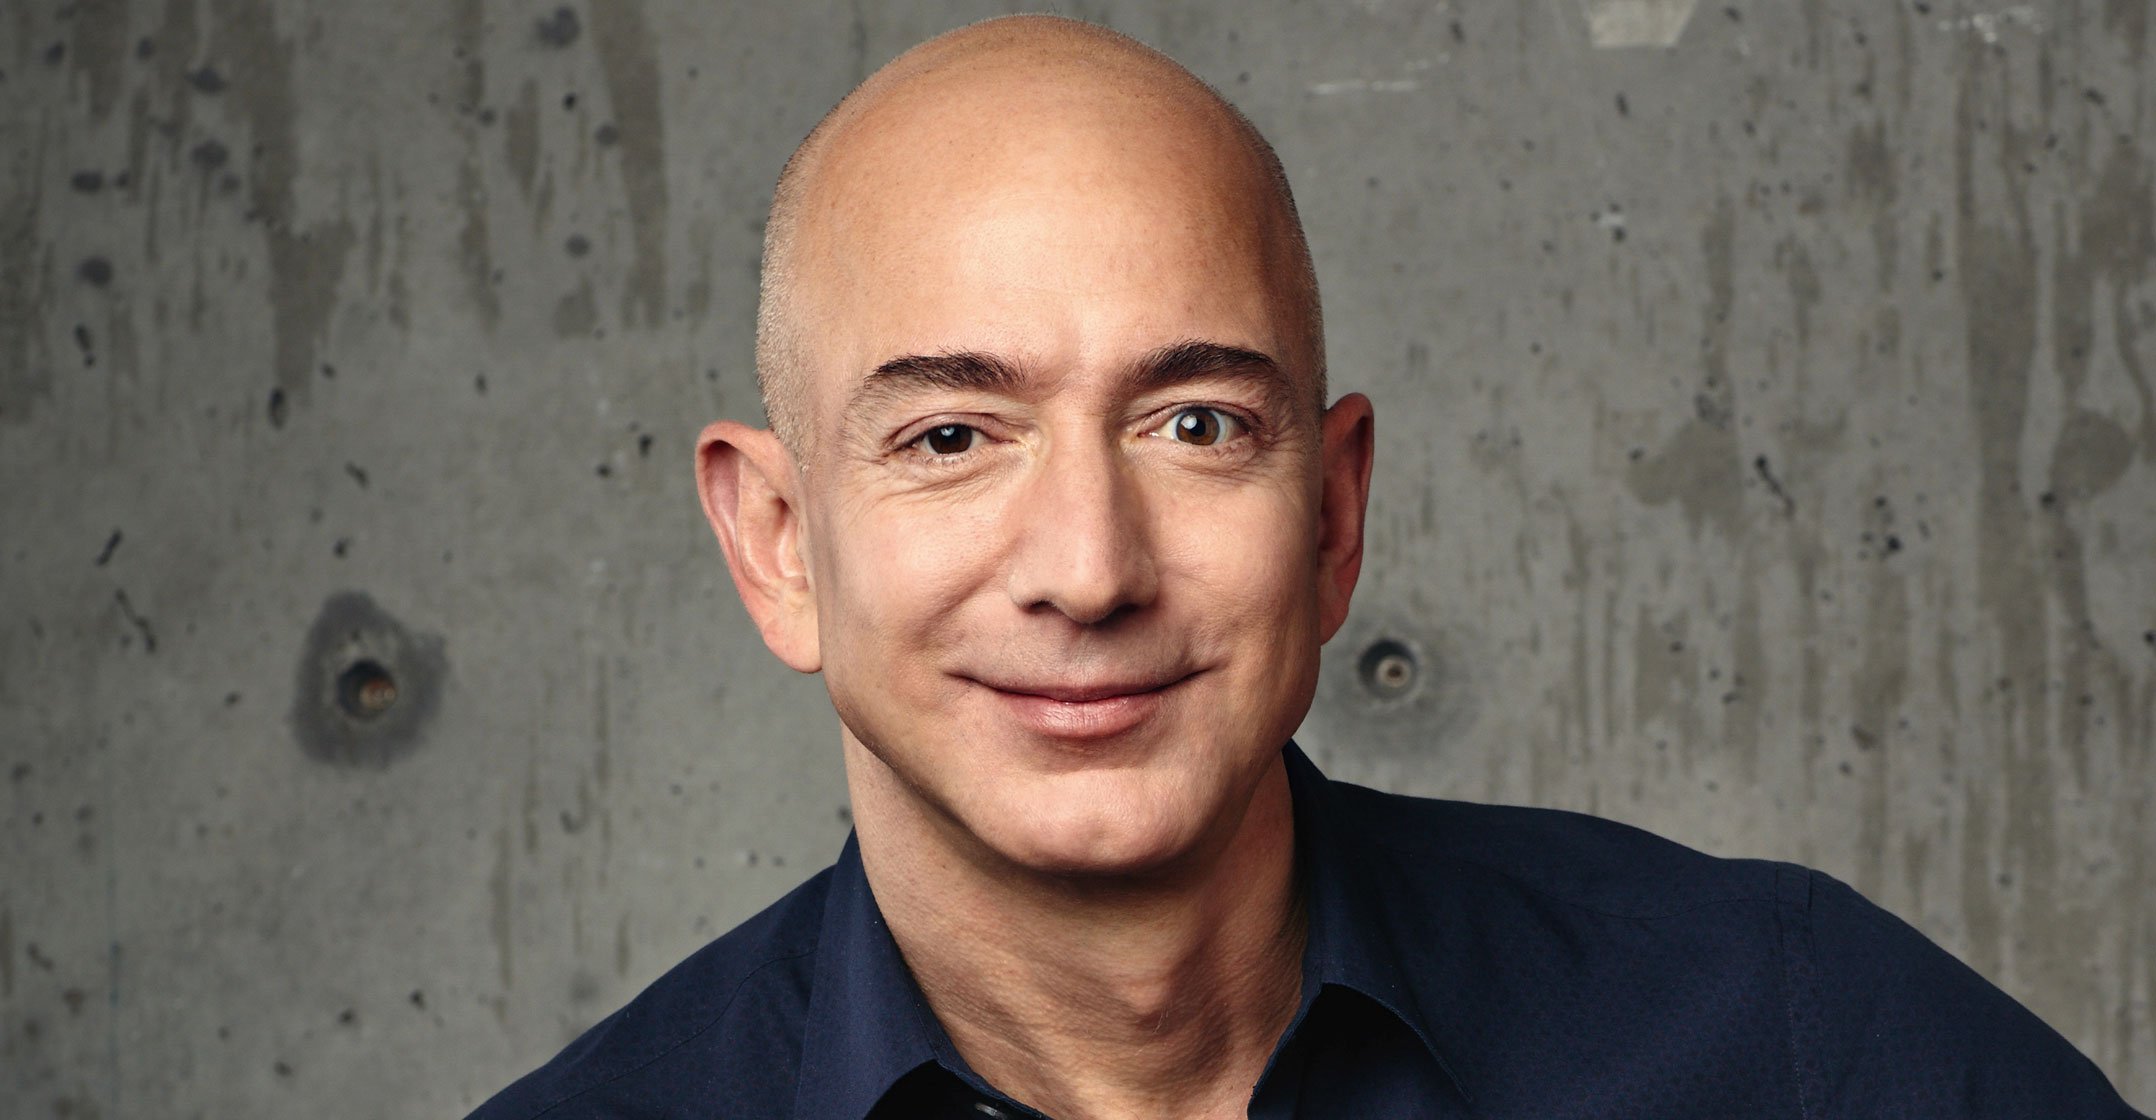 portrait of Jeff Bezos